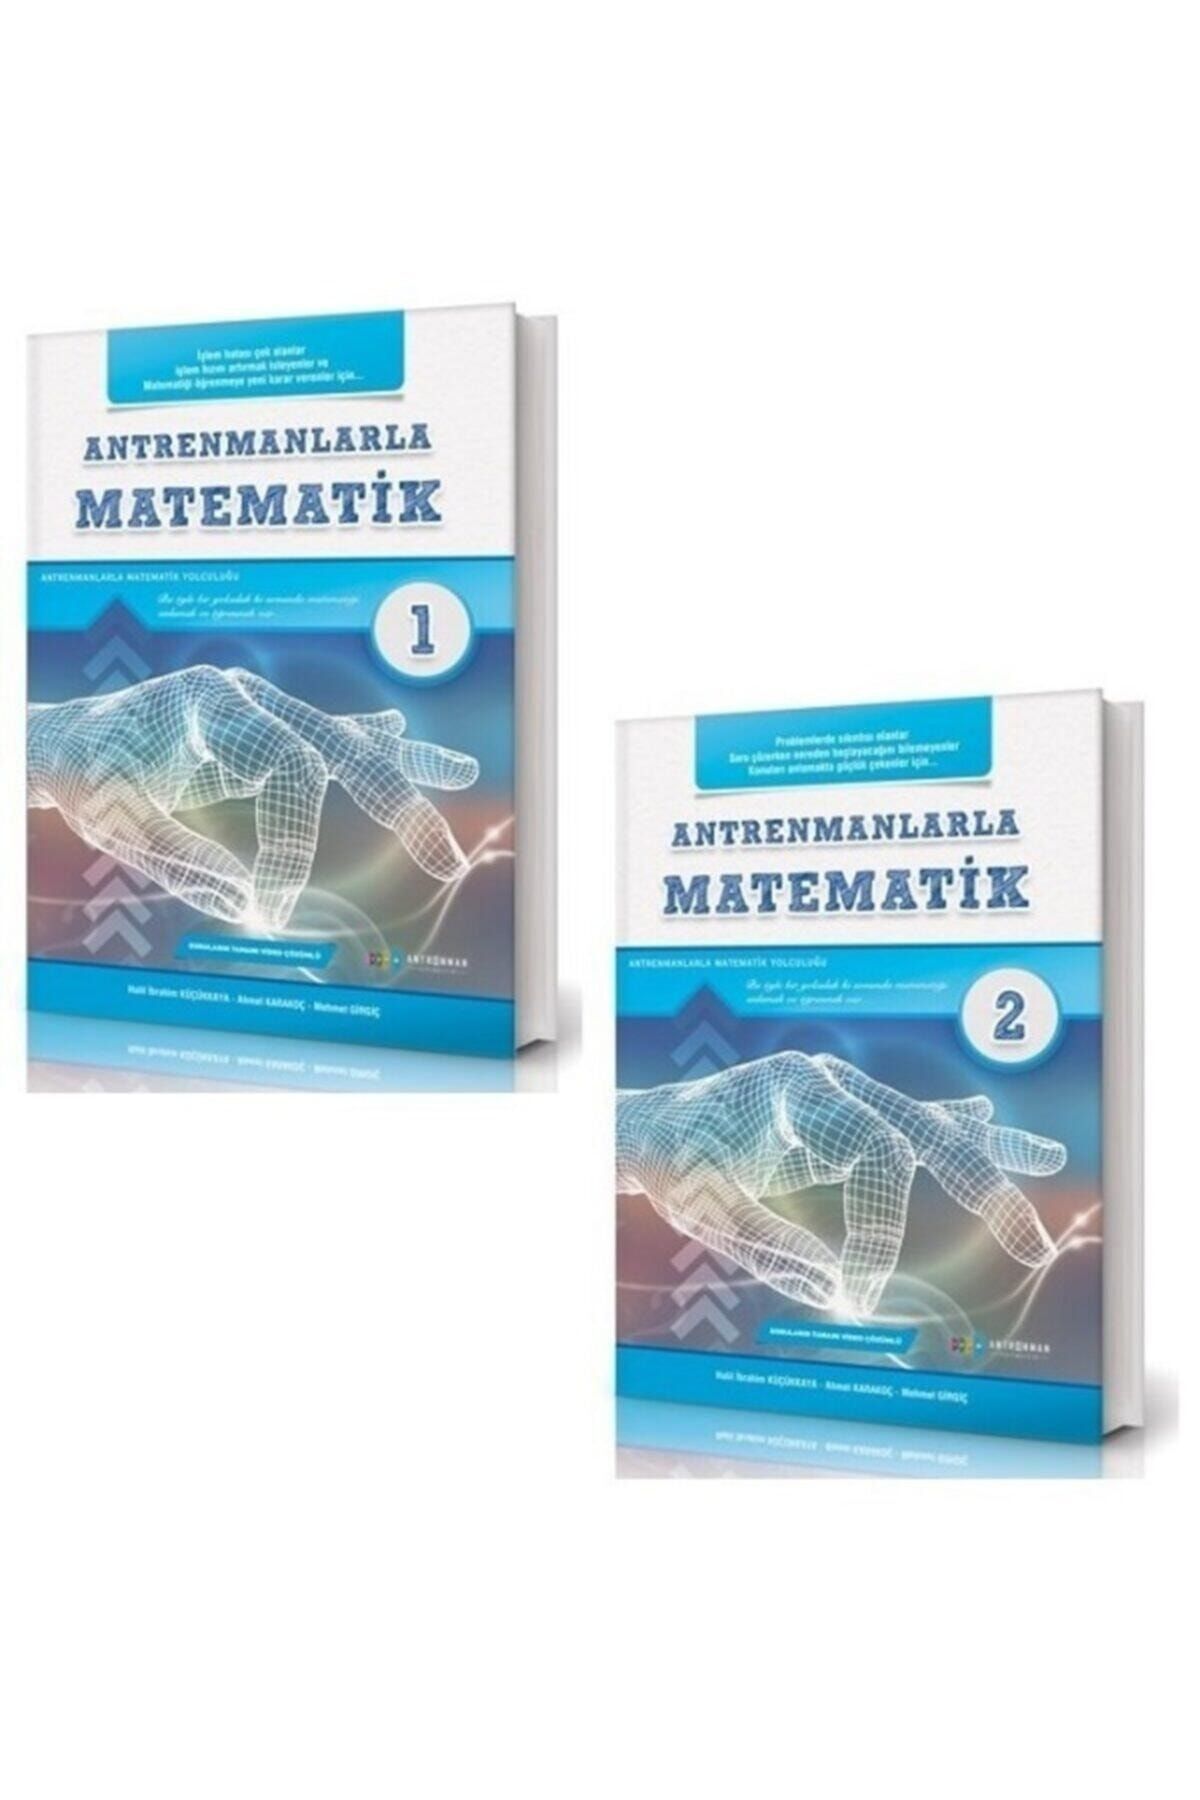 Antrenman Yayınları Antrenmanlarla Matematik 1-2 Set 2 Kitap Antrenman Yayınları